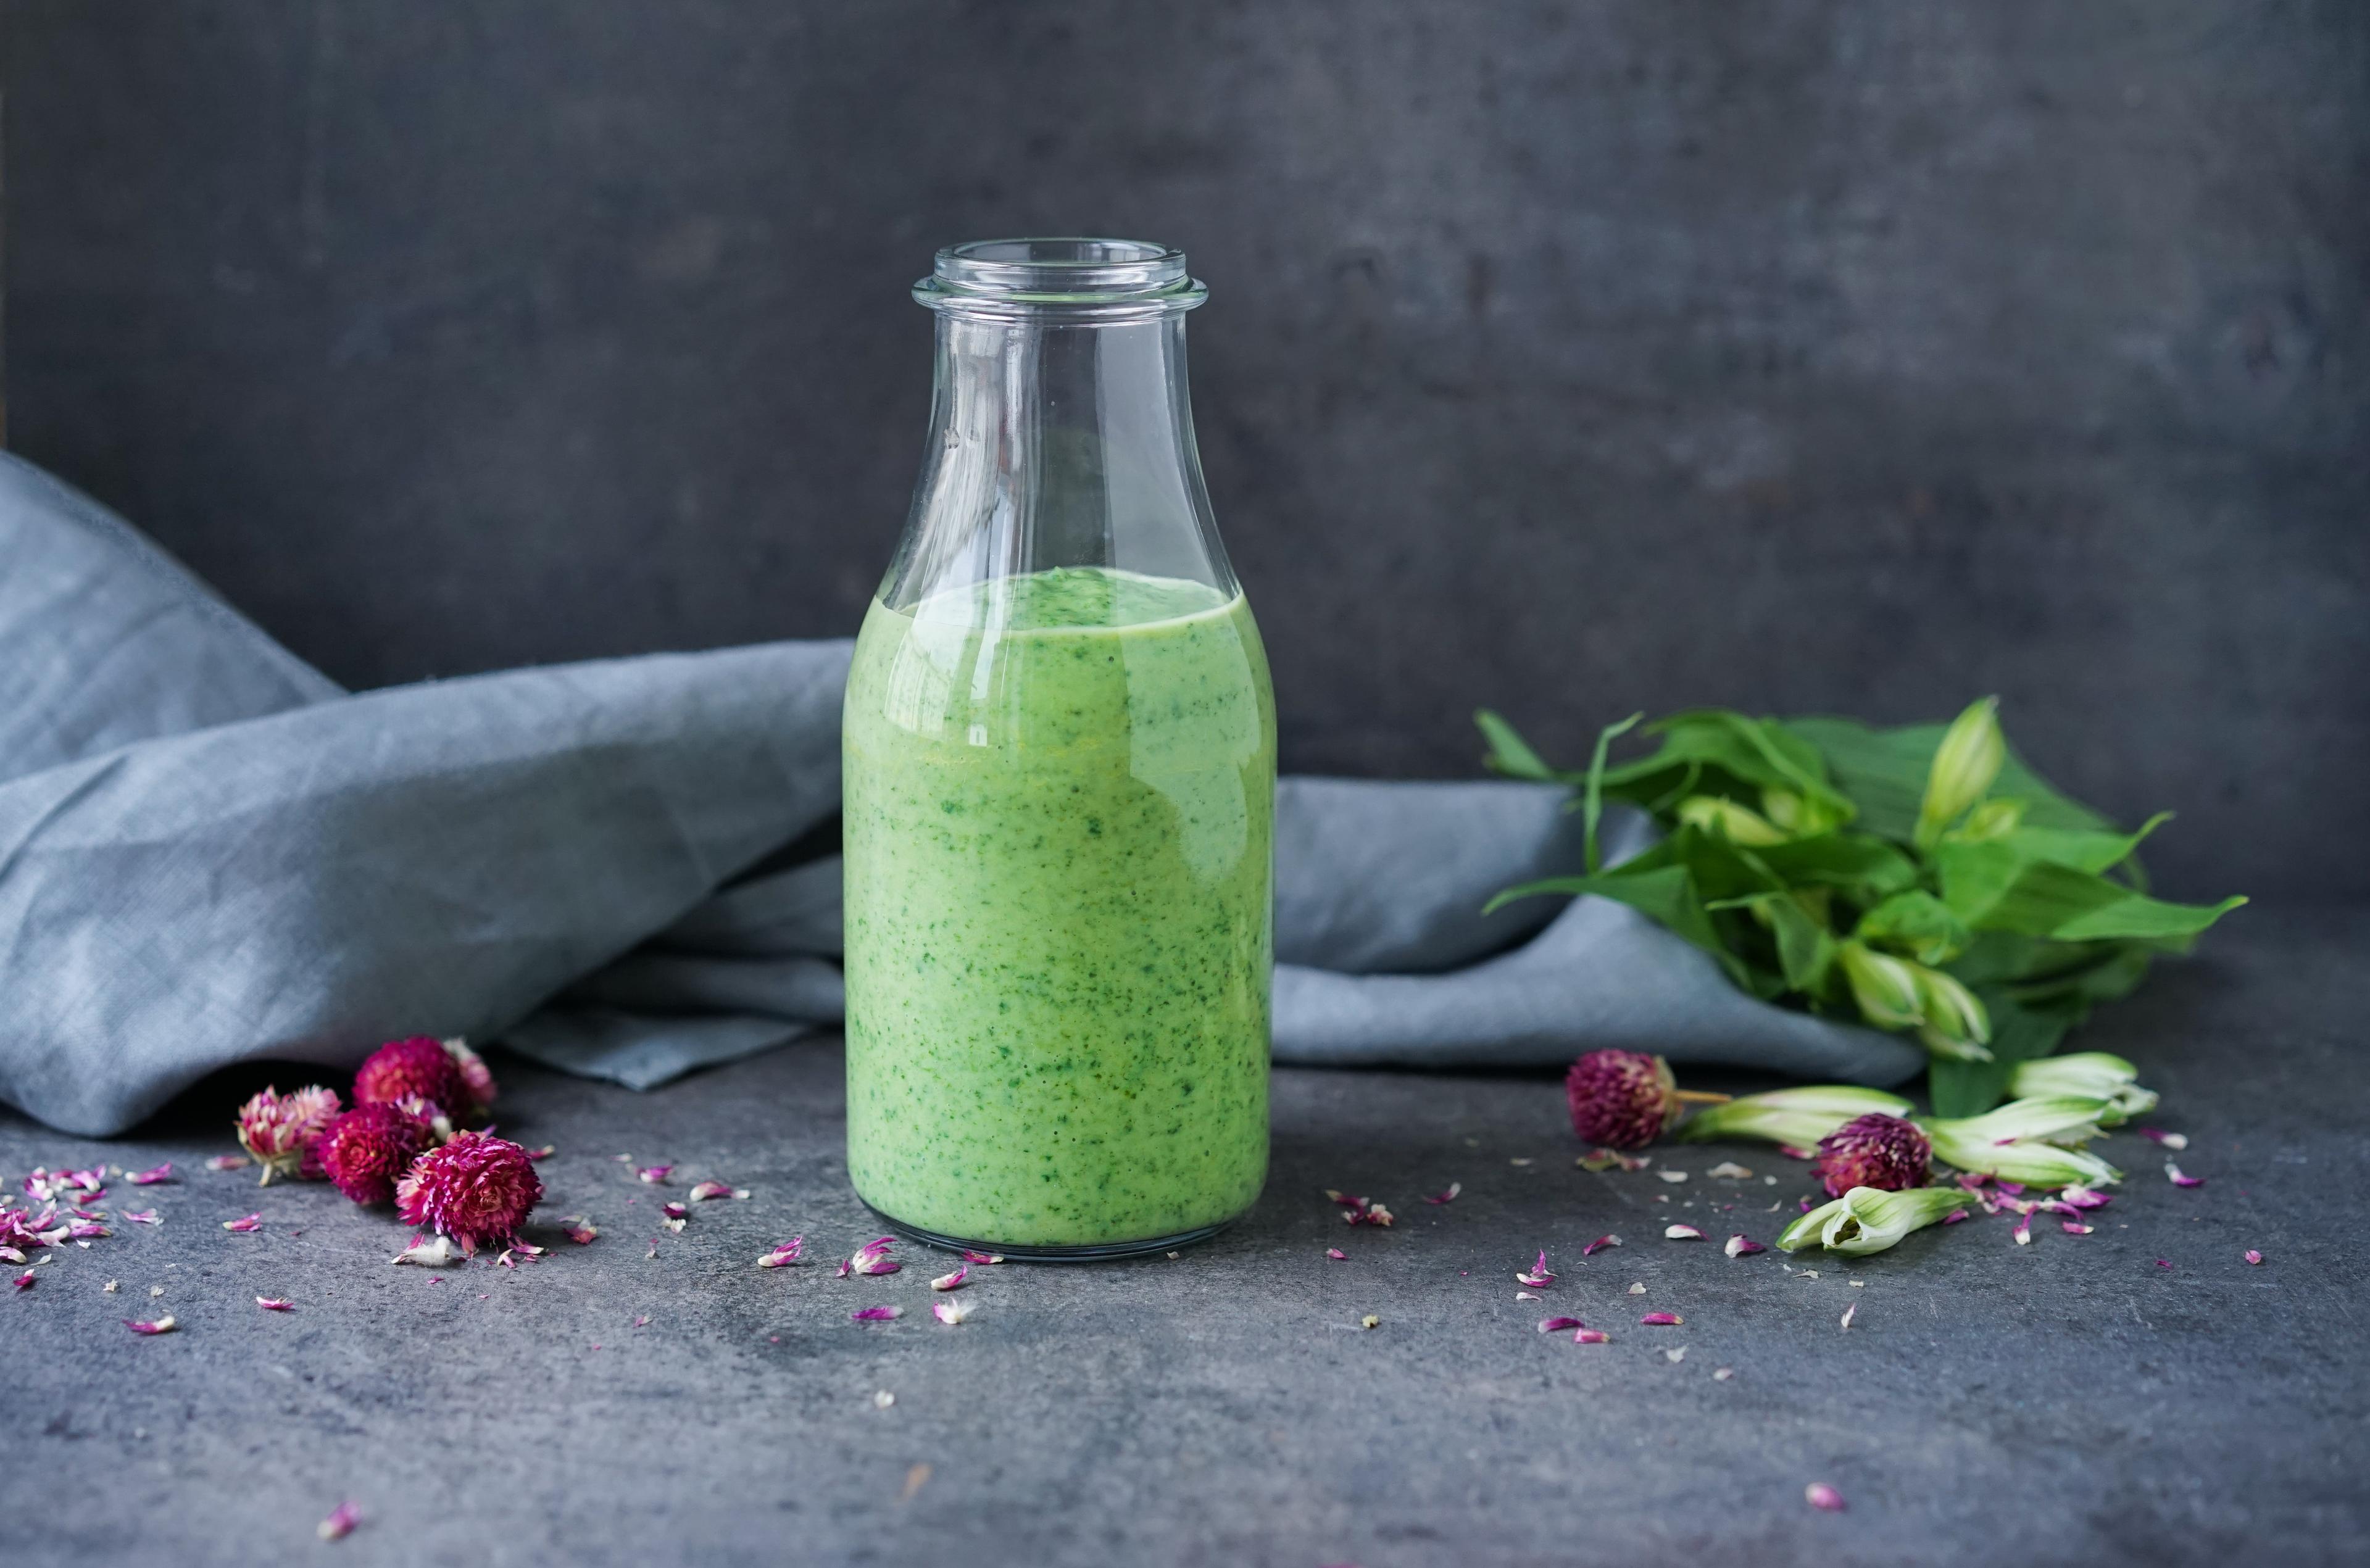 Glassflaske med grønn smoothie med spinat, avokado og yoghurt. Bak flasken ligger det en grå linserviett